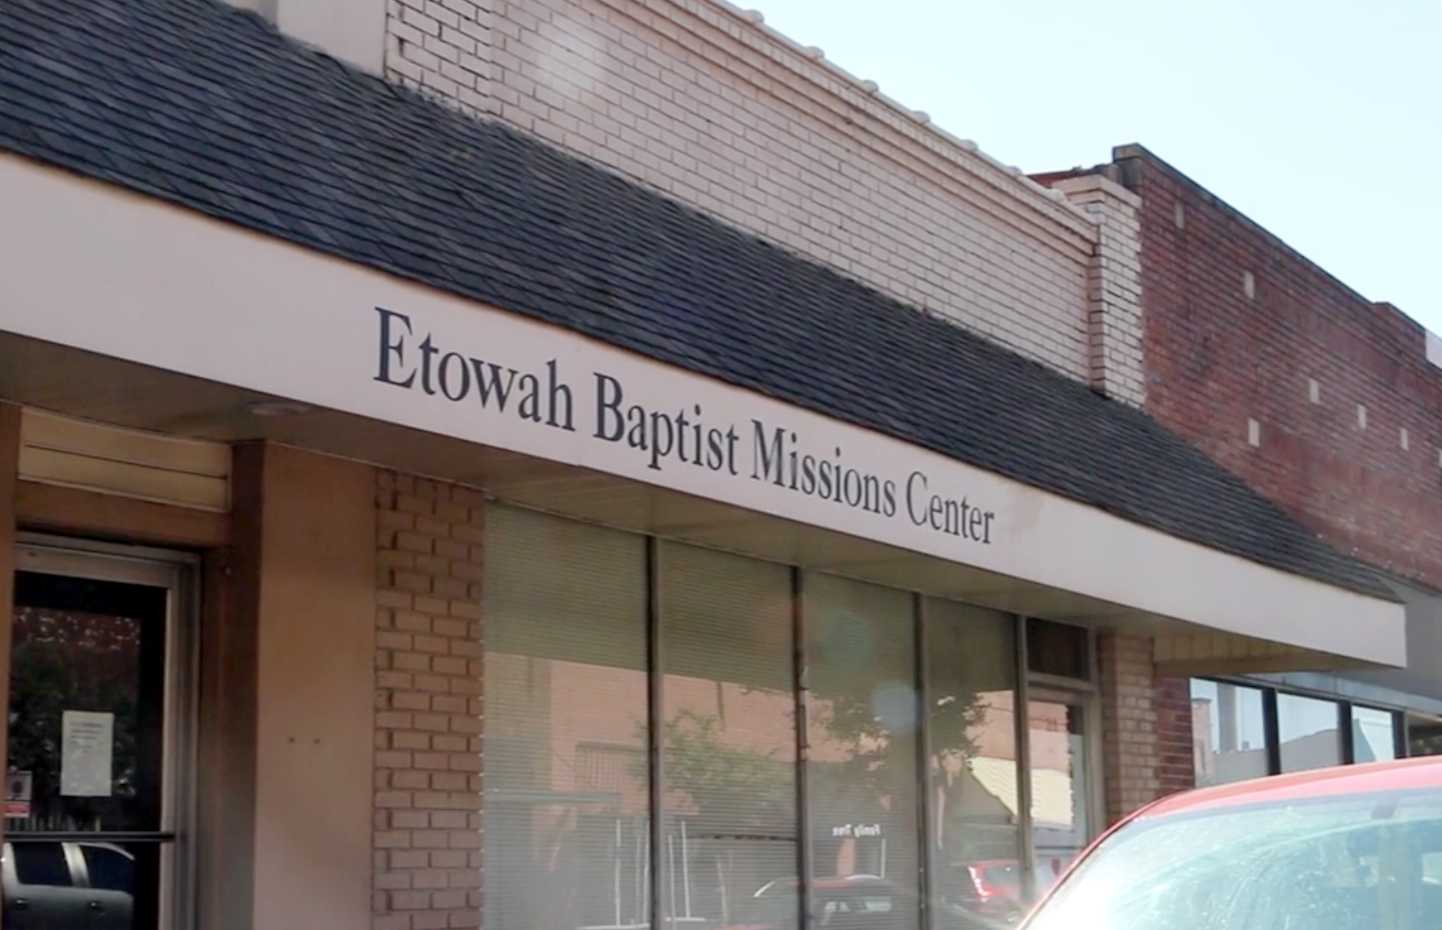 Etowah Baptist Mission Center